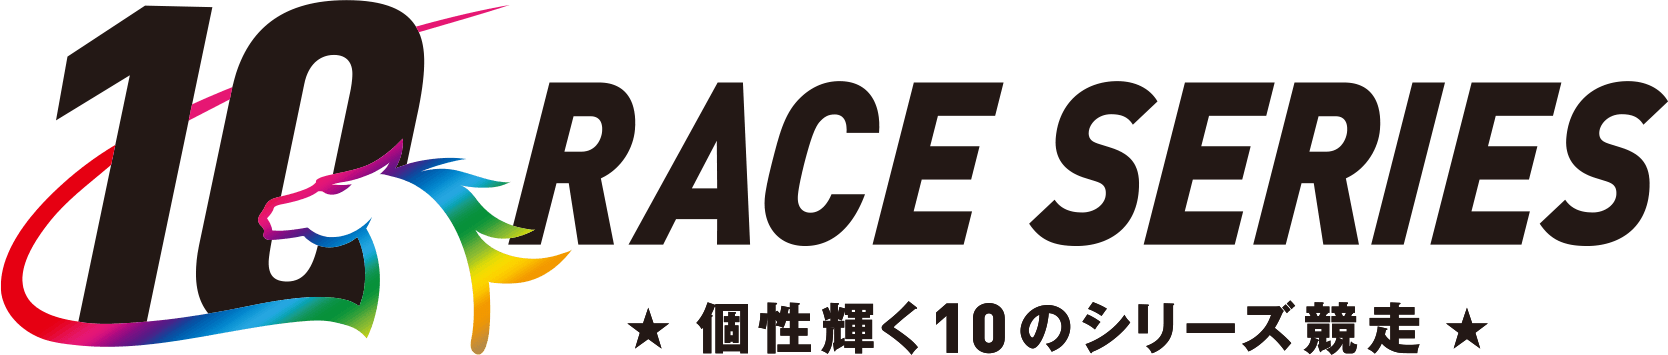 シリーズ競走特設サイト -10 RACE SERIES- 地方競馬